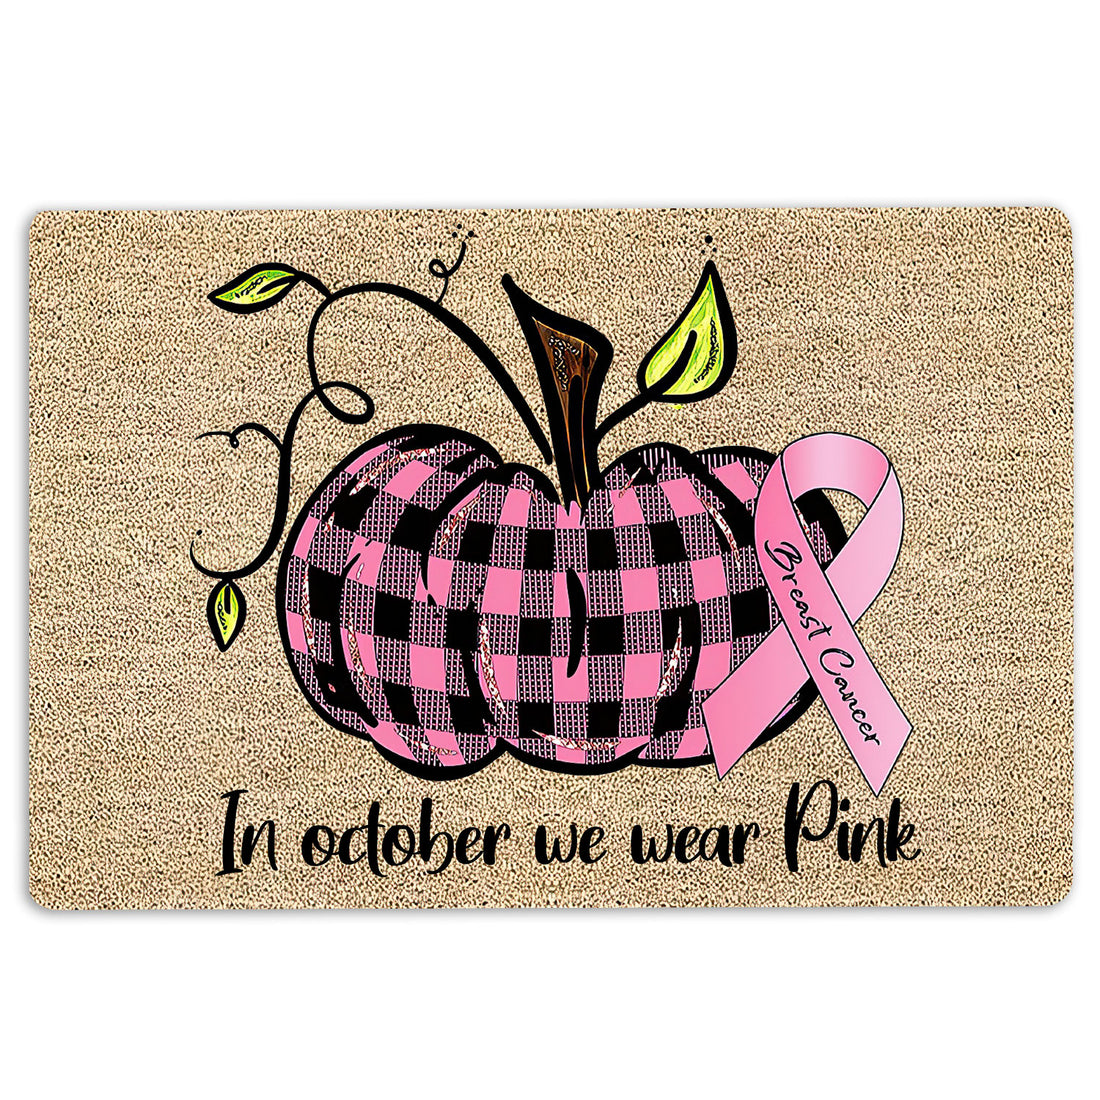 Ohaprints-Doormat-Outdoor-Indoor-Breast-Cancer-Awareness-In-October-We-Wear-Pink-Pumpkin-Rubber-Door-Mat-1905-18'' x 30''